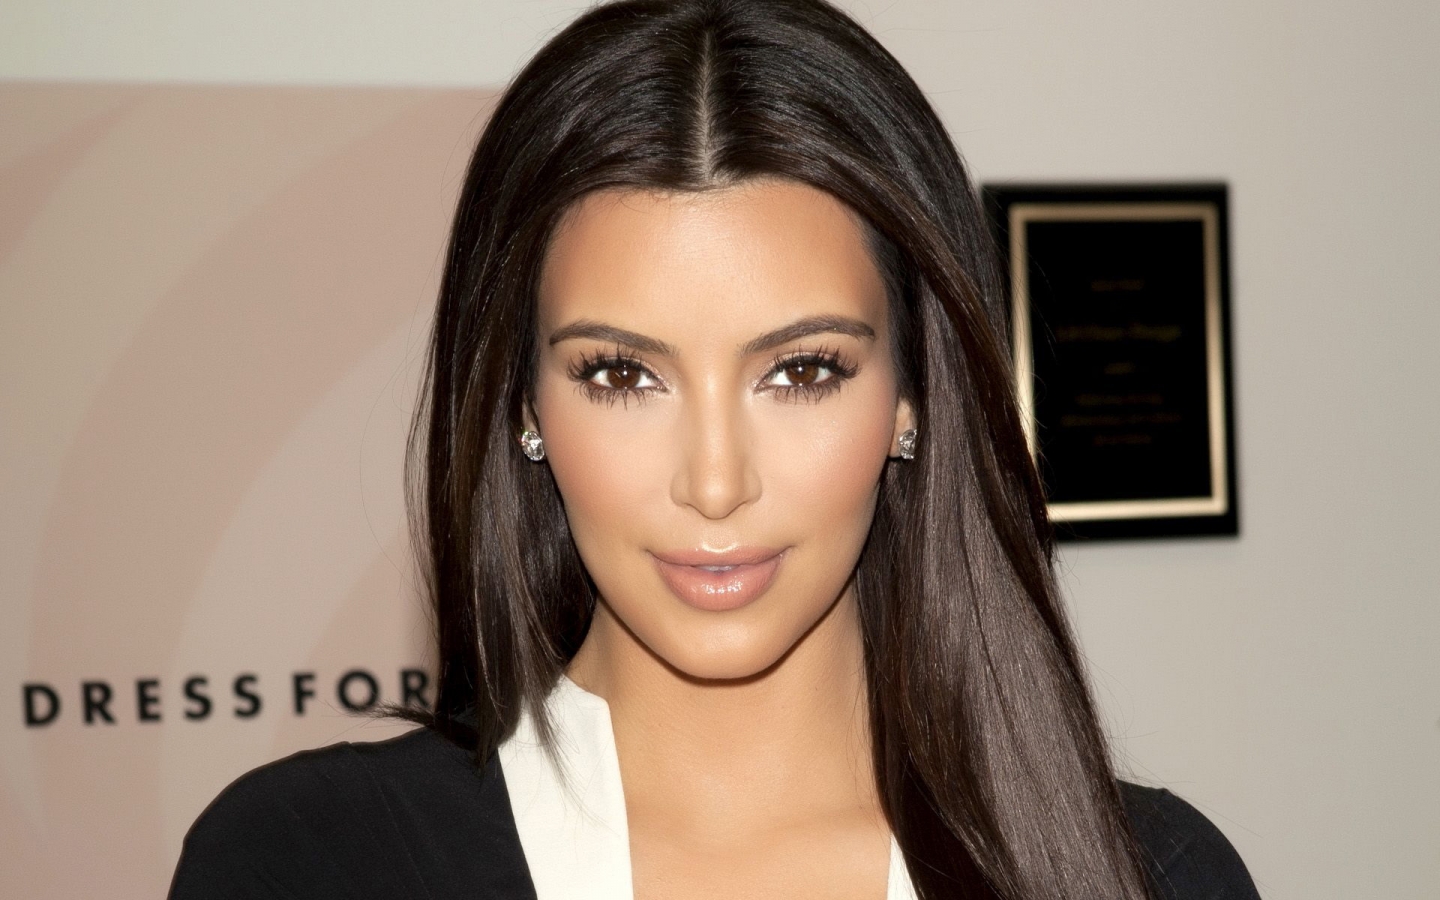 Gorgeous Kim Kardashian for 1440 x 900 widescreen resolution